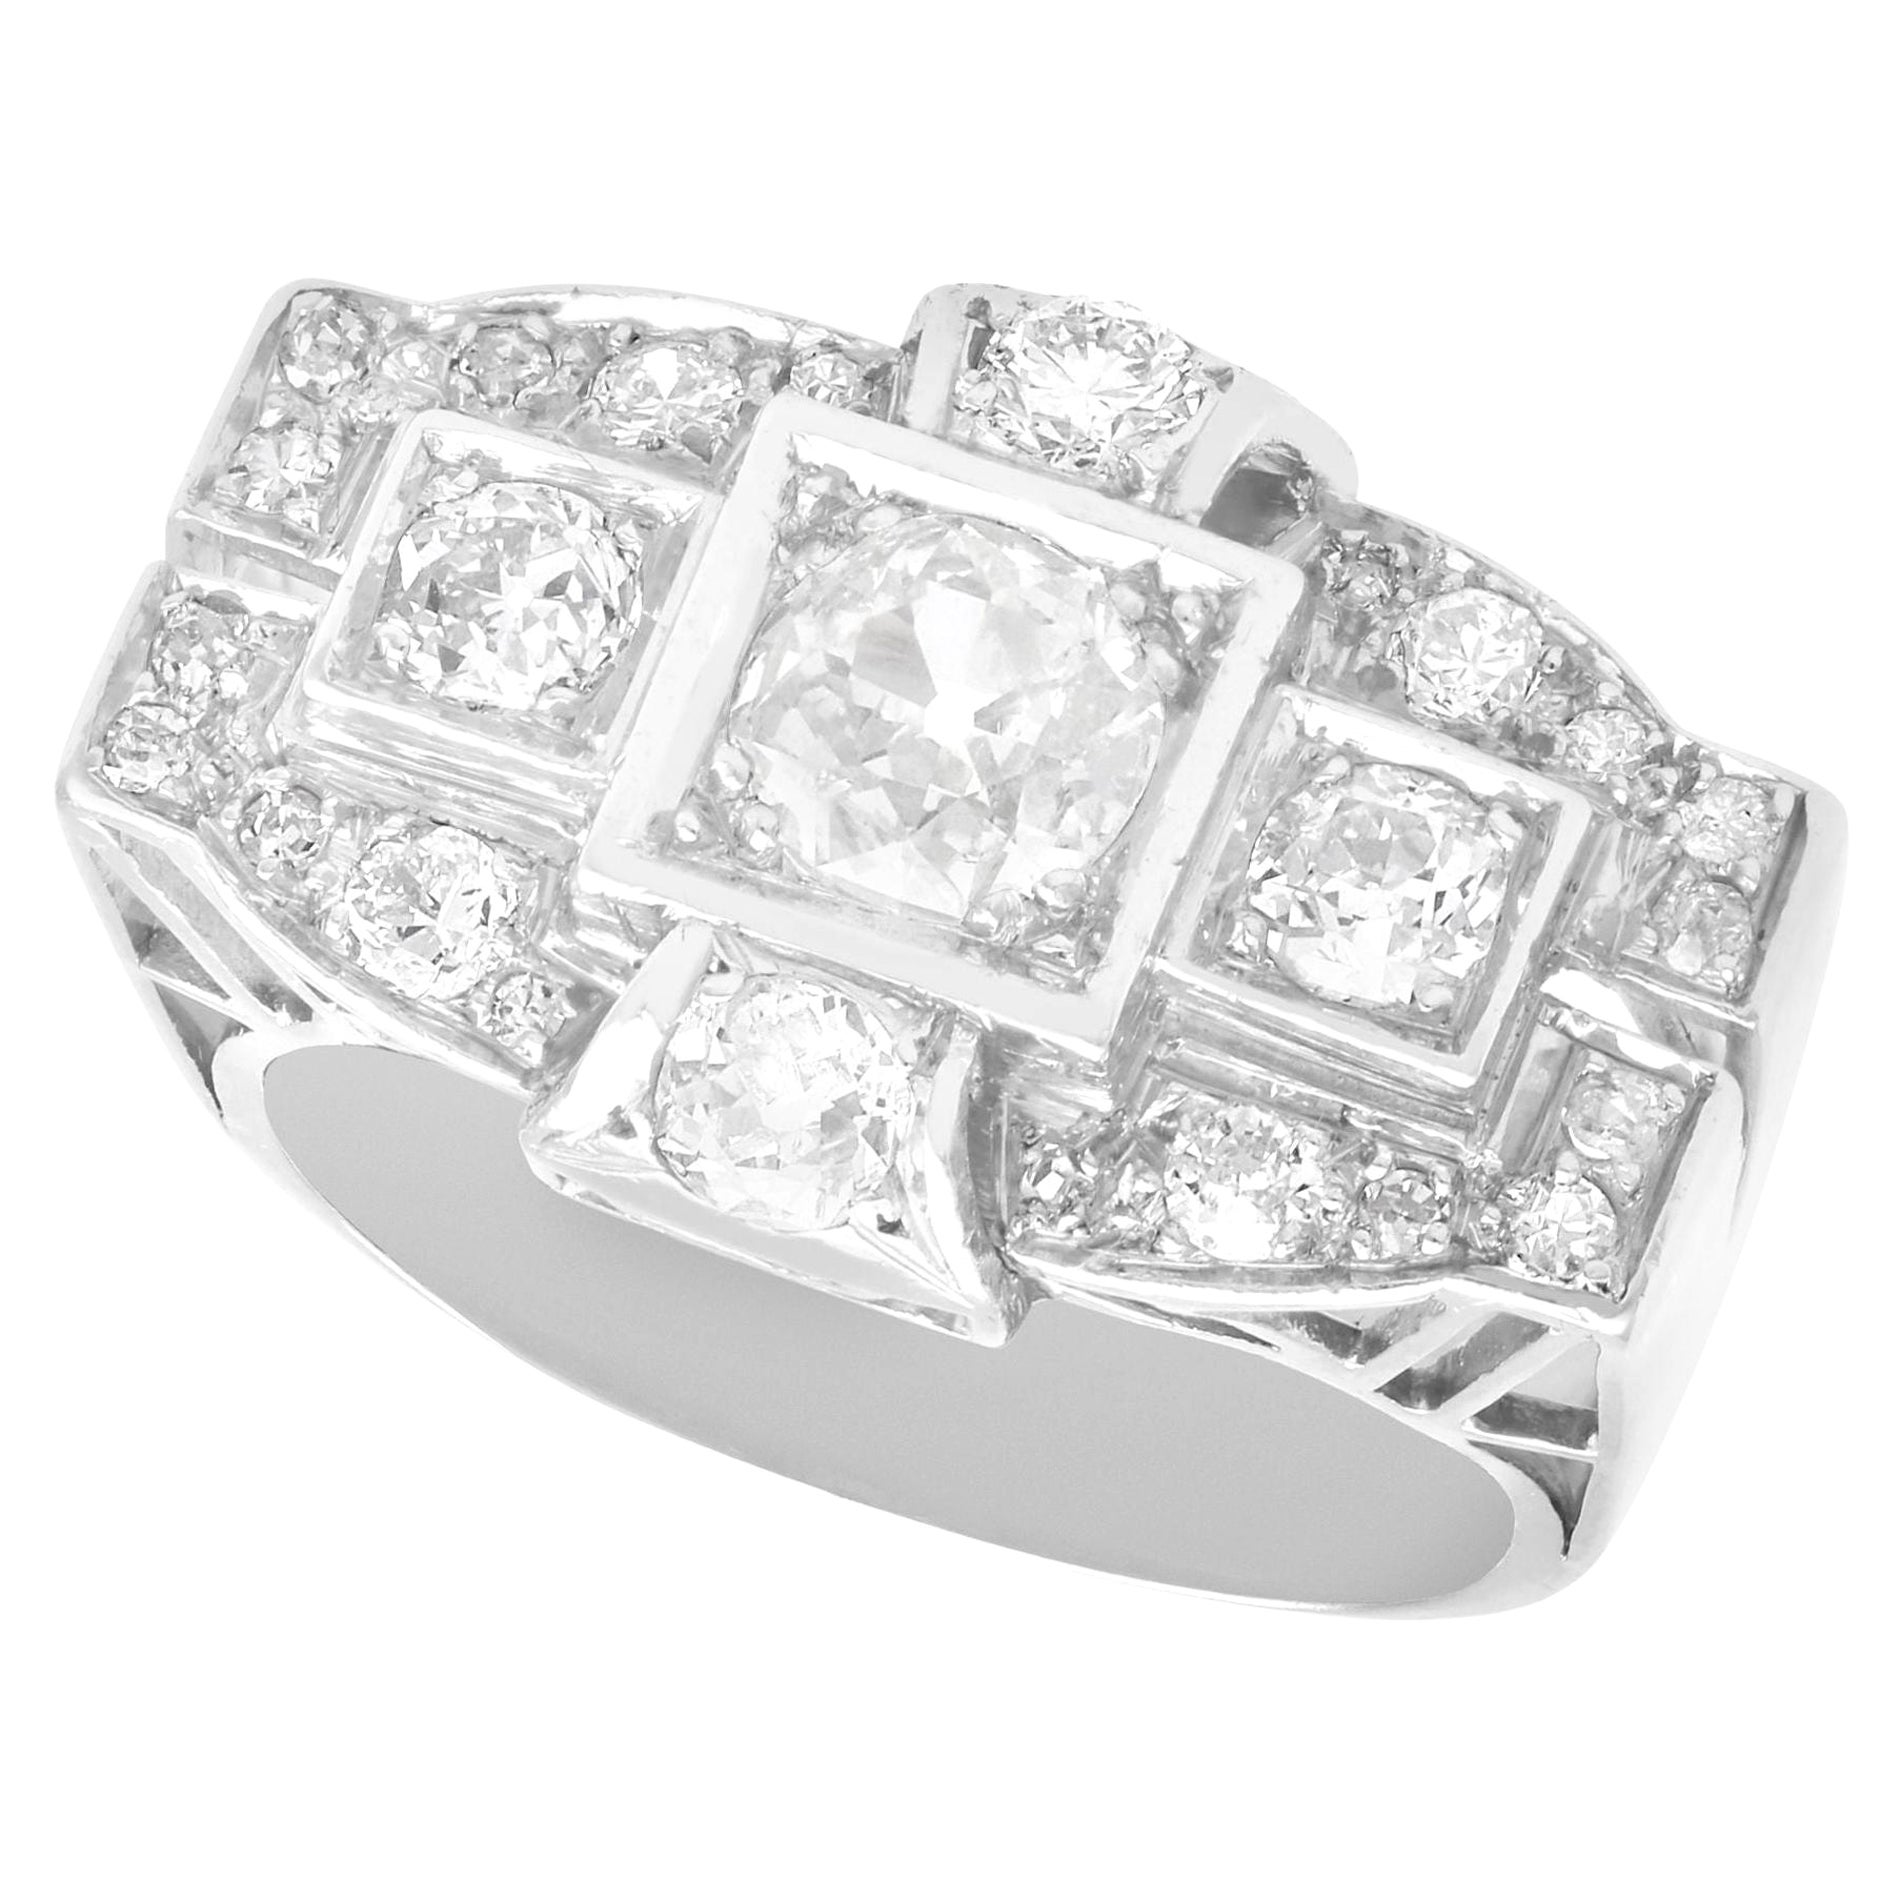 Antique Art Deco 1.73 Carat Diamond and Platinum Cocktail Ring